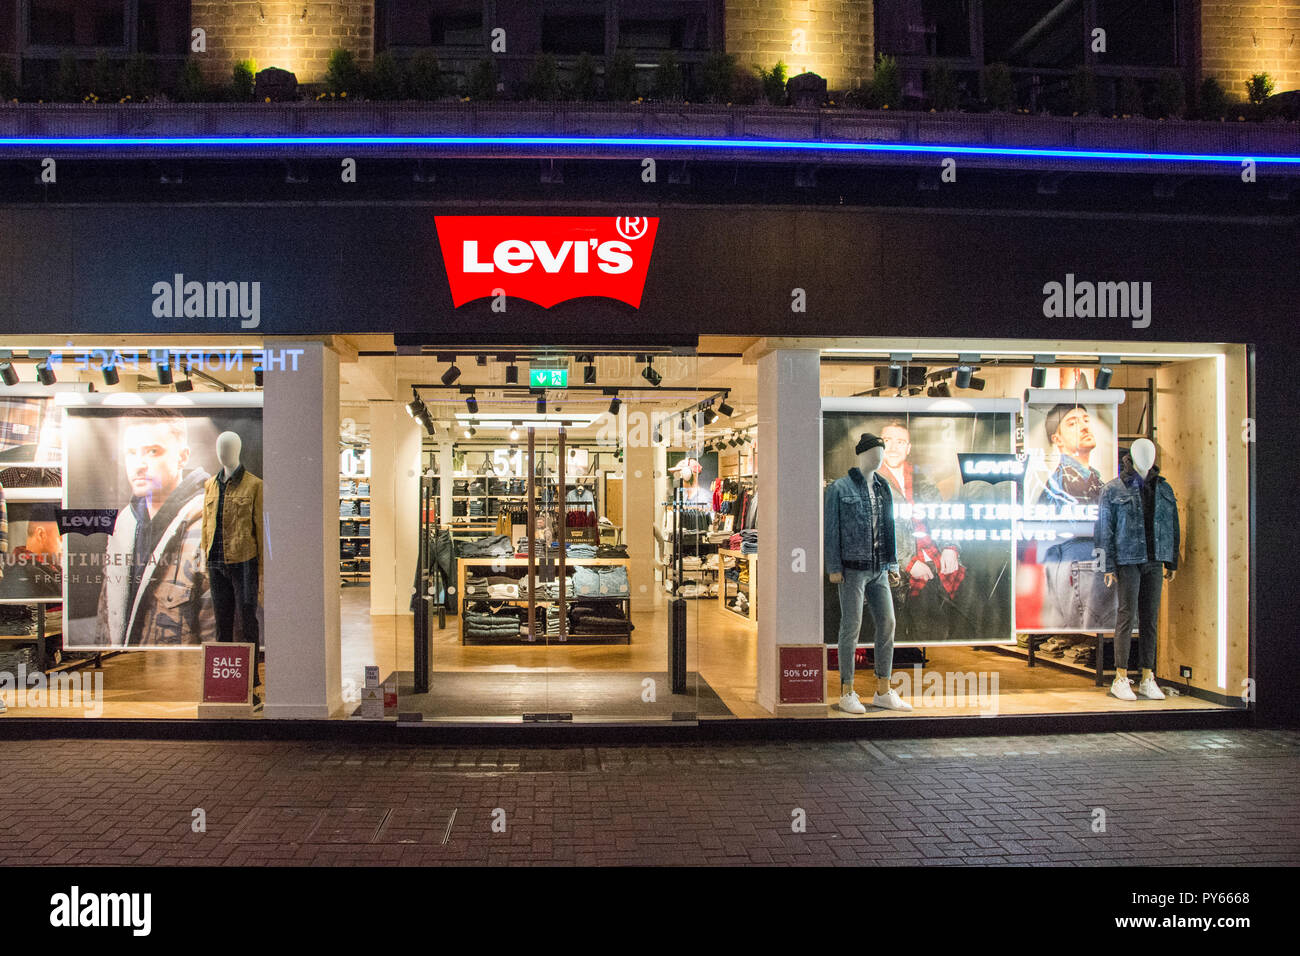 Levis Shop Stockfotos und -bilder Kaufen - Alamy